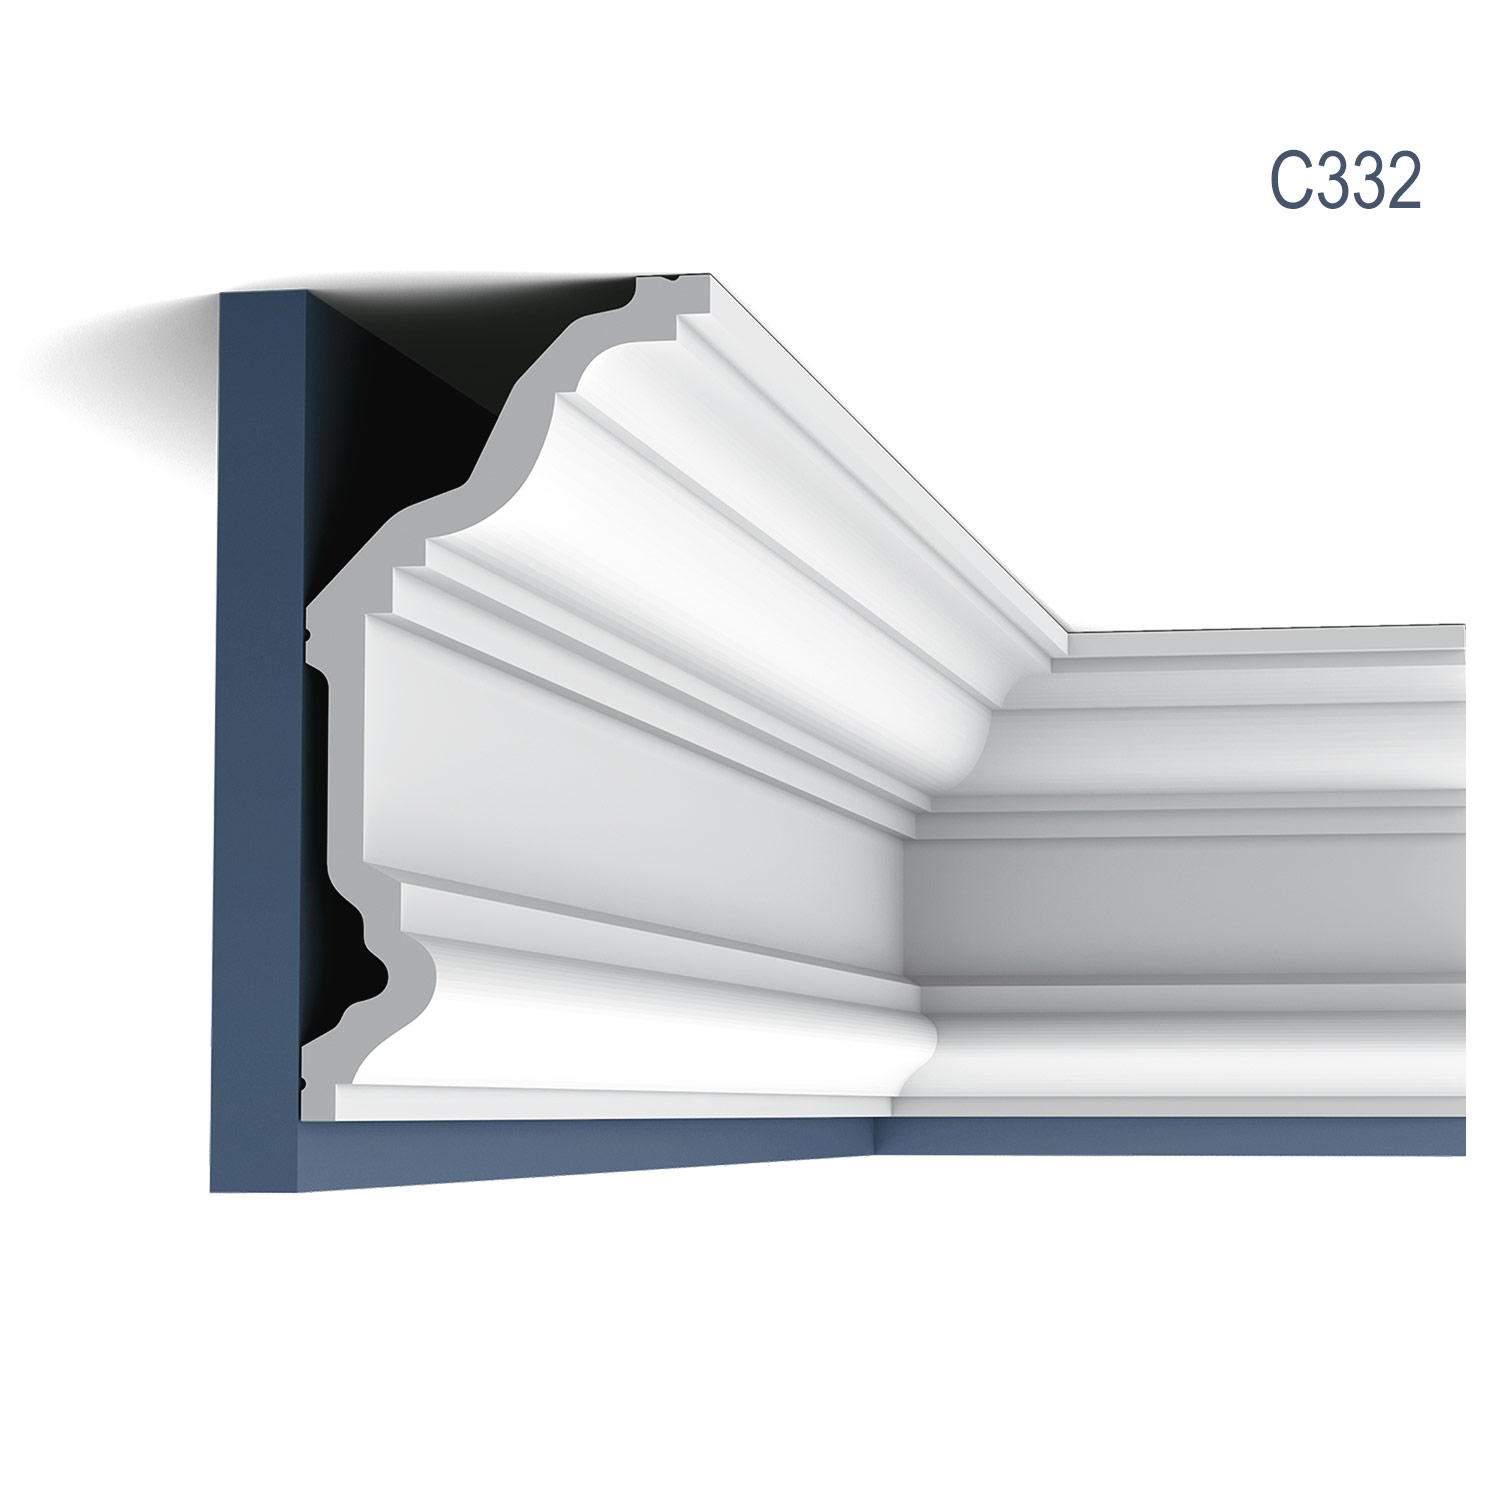 Cornisa C332 NOBLESE, profil decorativ, pentru tavan, alba, vopsibila, rigida, calitate excelenta, Belgia, din Poliuretan rigid, L 200 x H 11,4 x L 23 cm